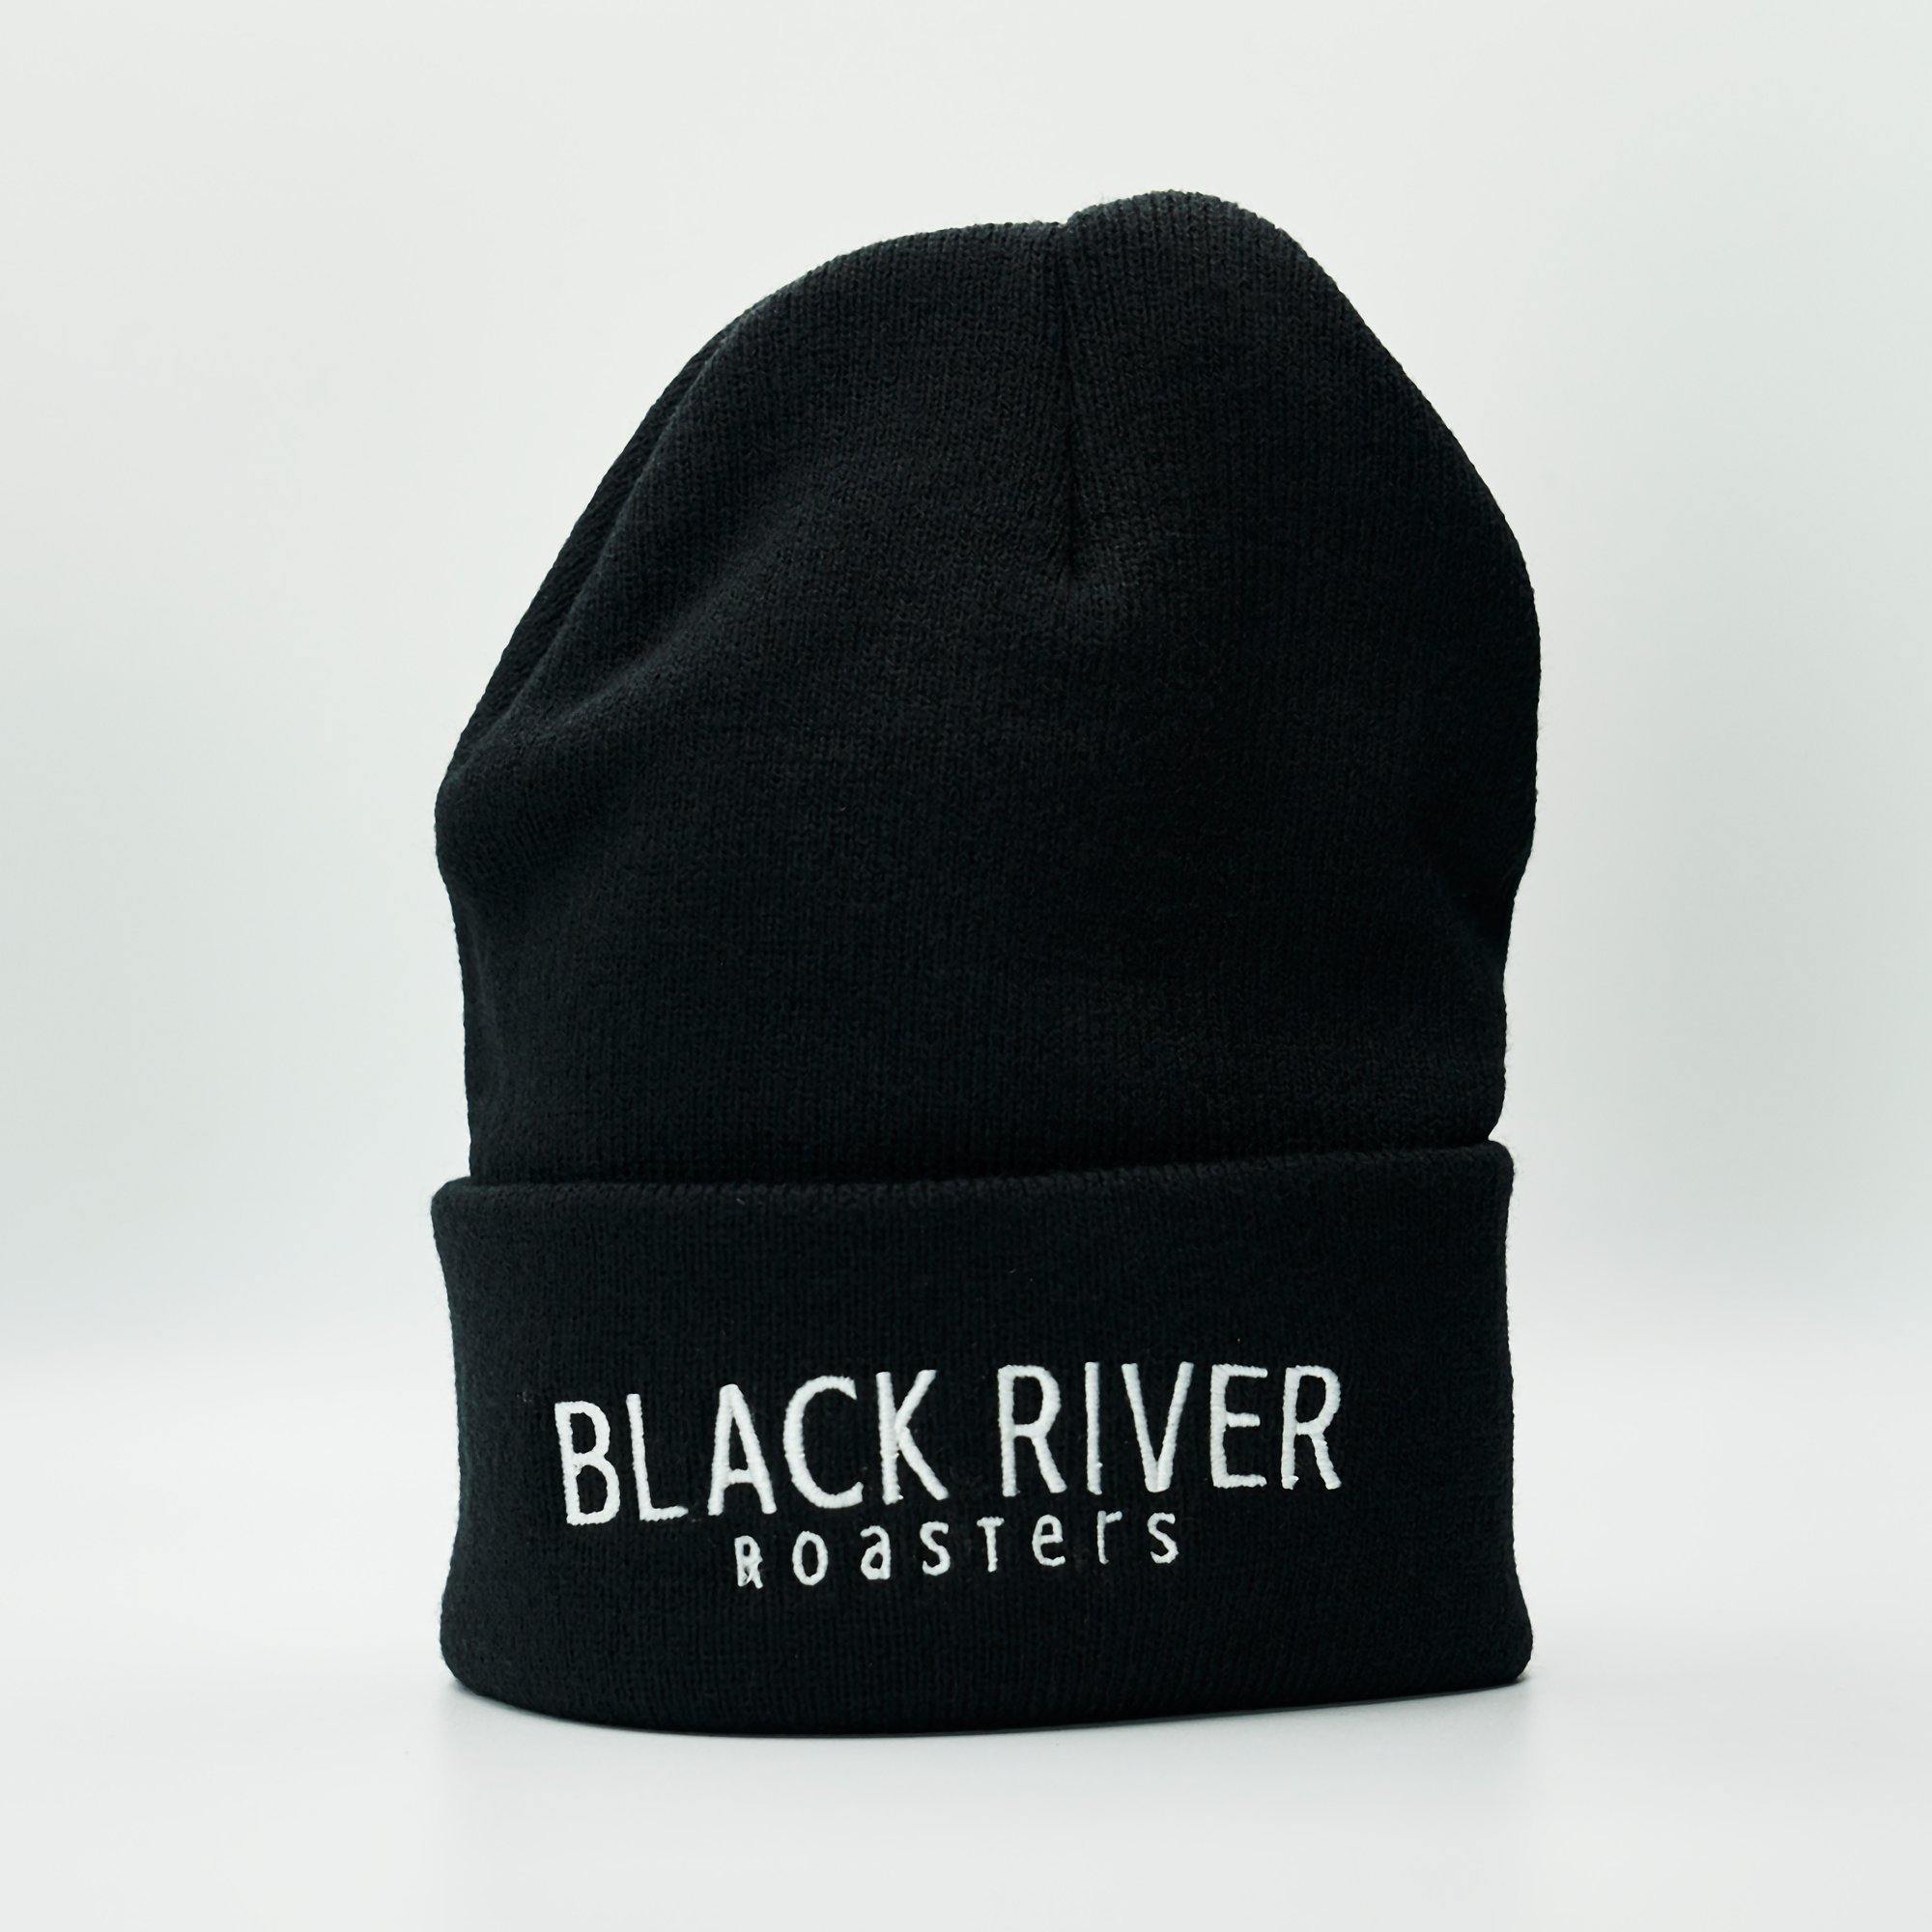 Black River Roasters Black Beanie - Black River Roasters